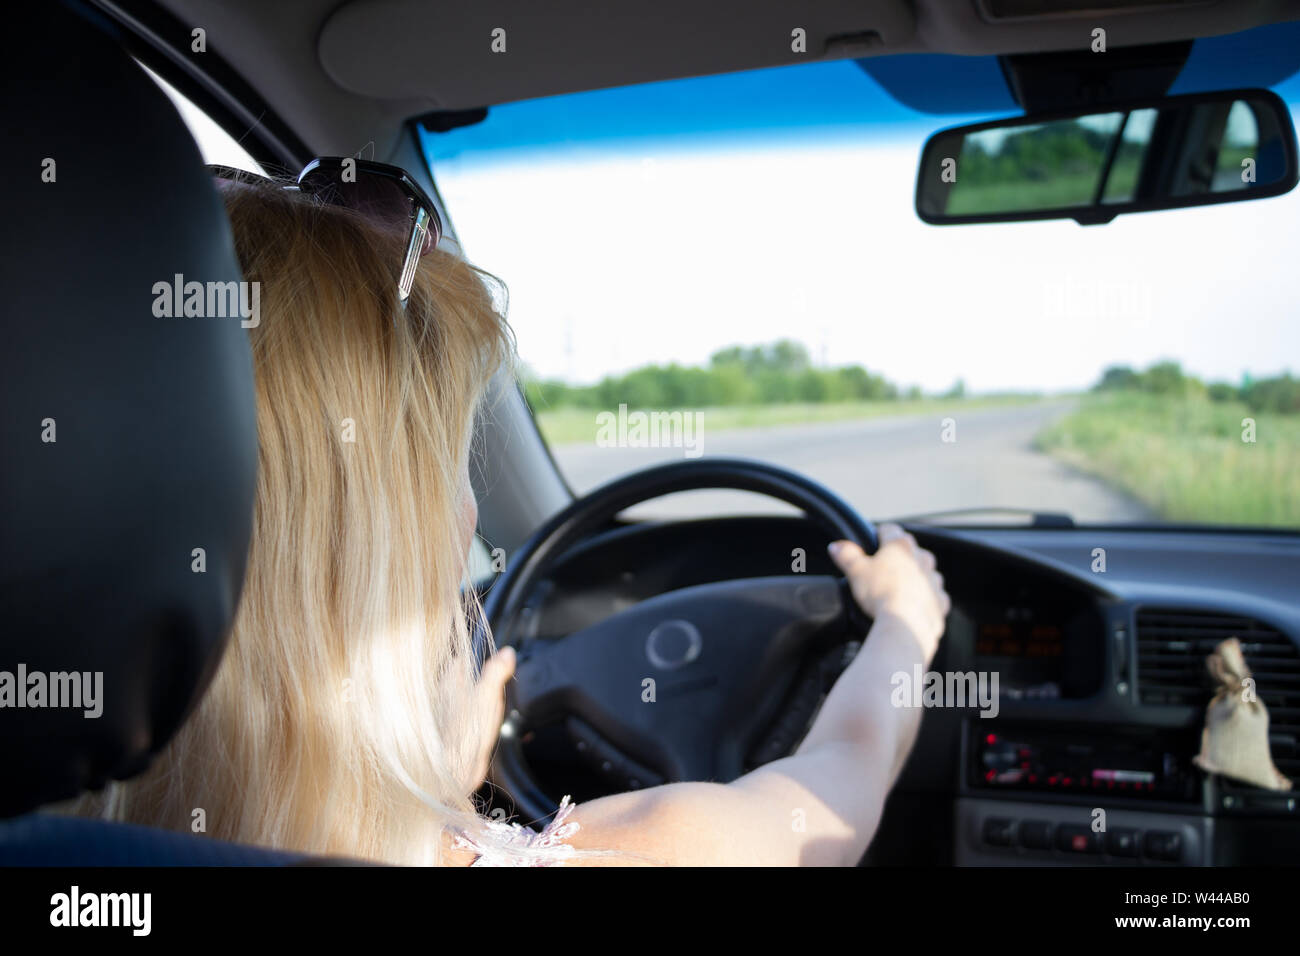 Jolie blondinette gardez les deux mains sur le volant en conduisant une vieille voiture avec intérieur noir à travers la route de campagne. Tableau de bord du véhicule Banque D'Images